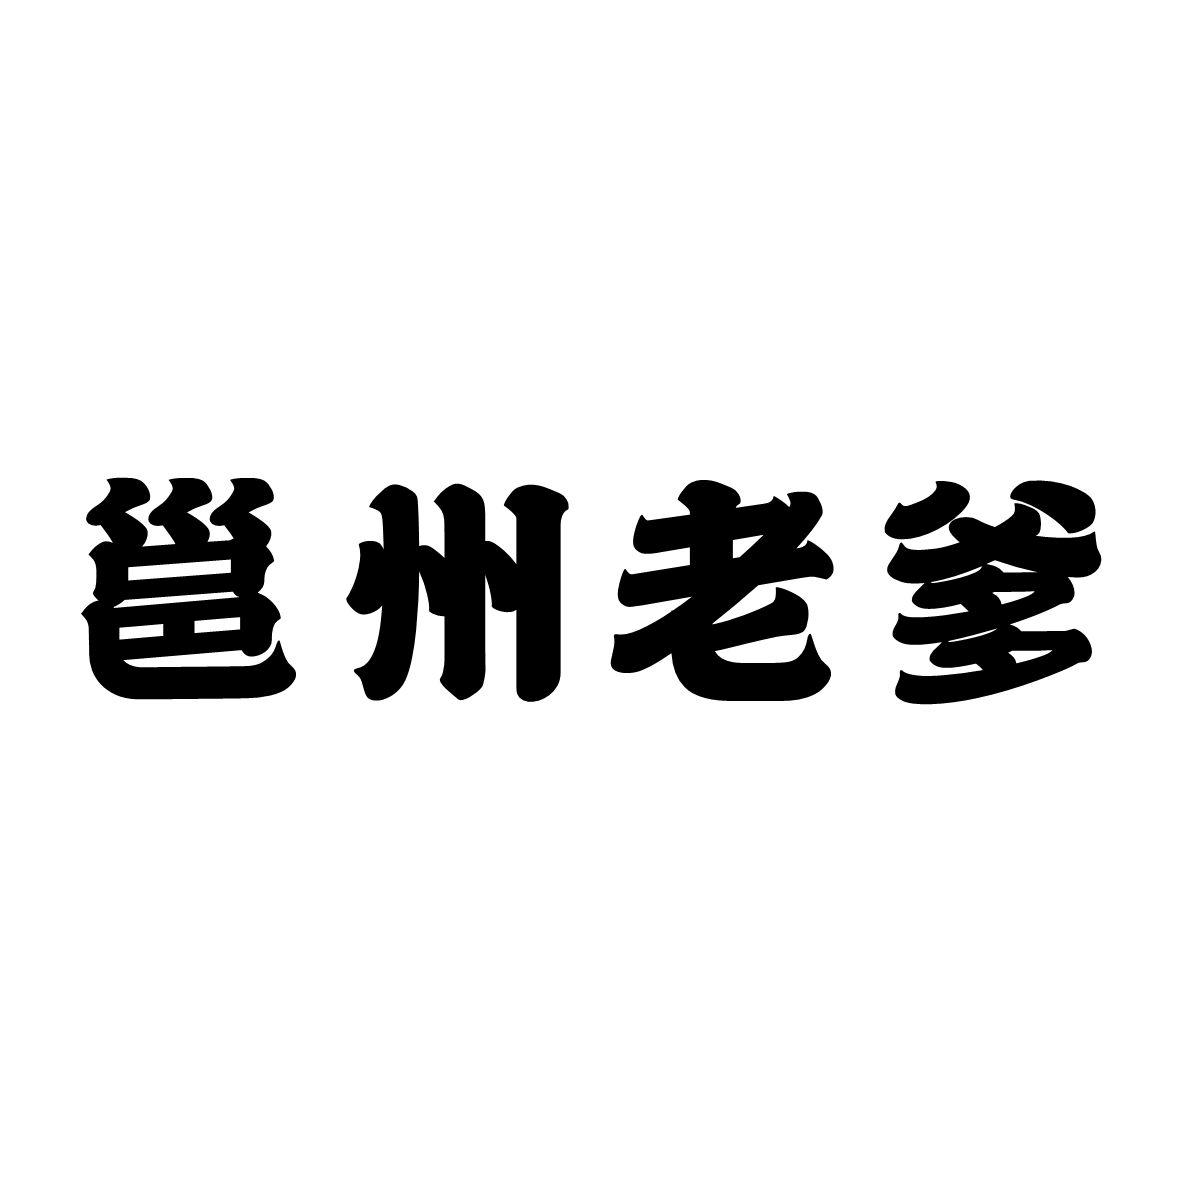 邕州老爹logo